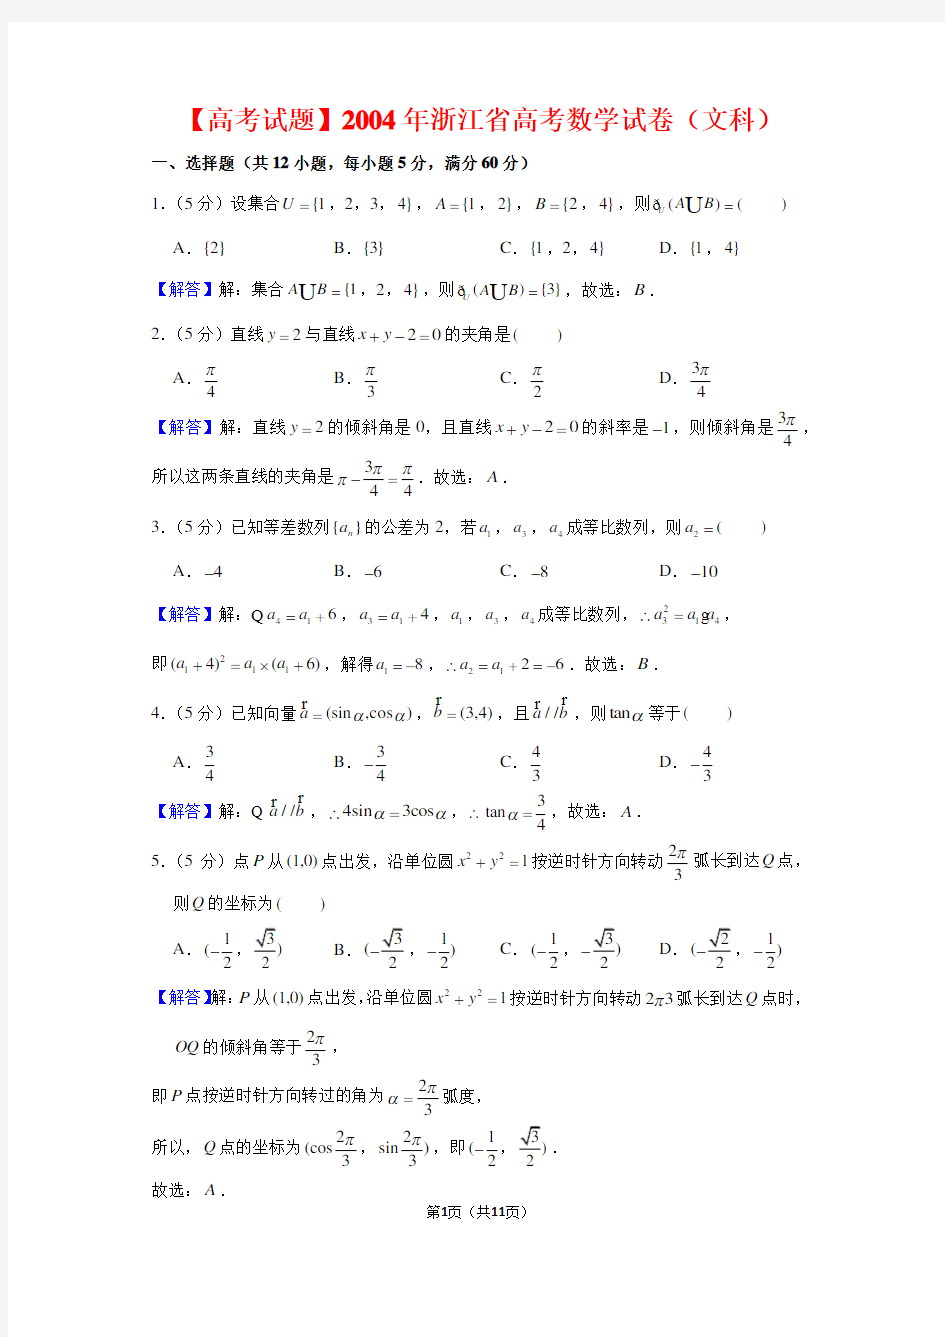 【高考试题】2004年浙江省高考数学试卷(文科)及答案